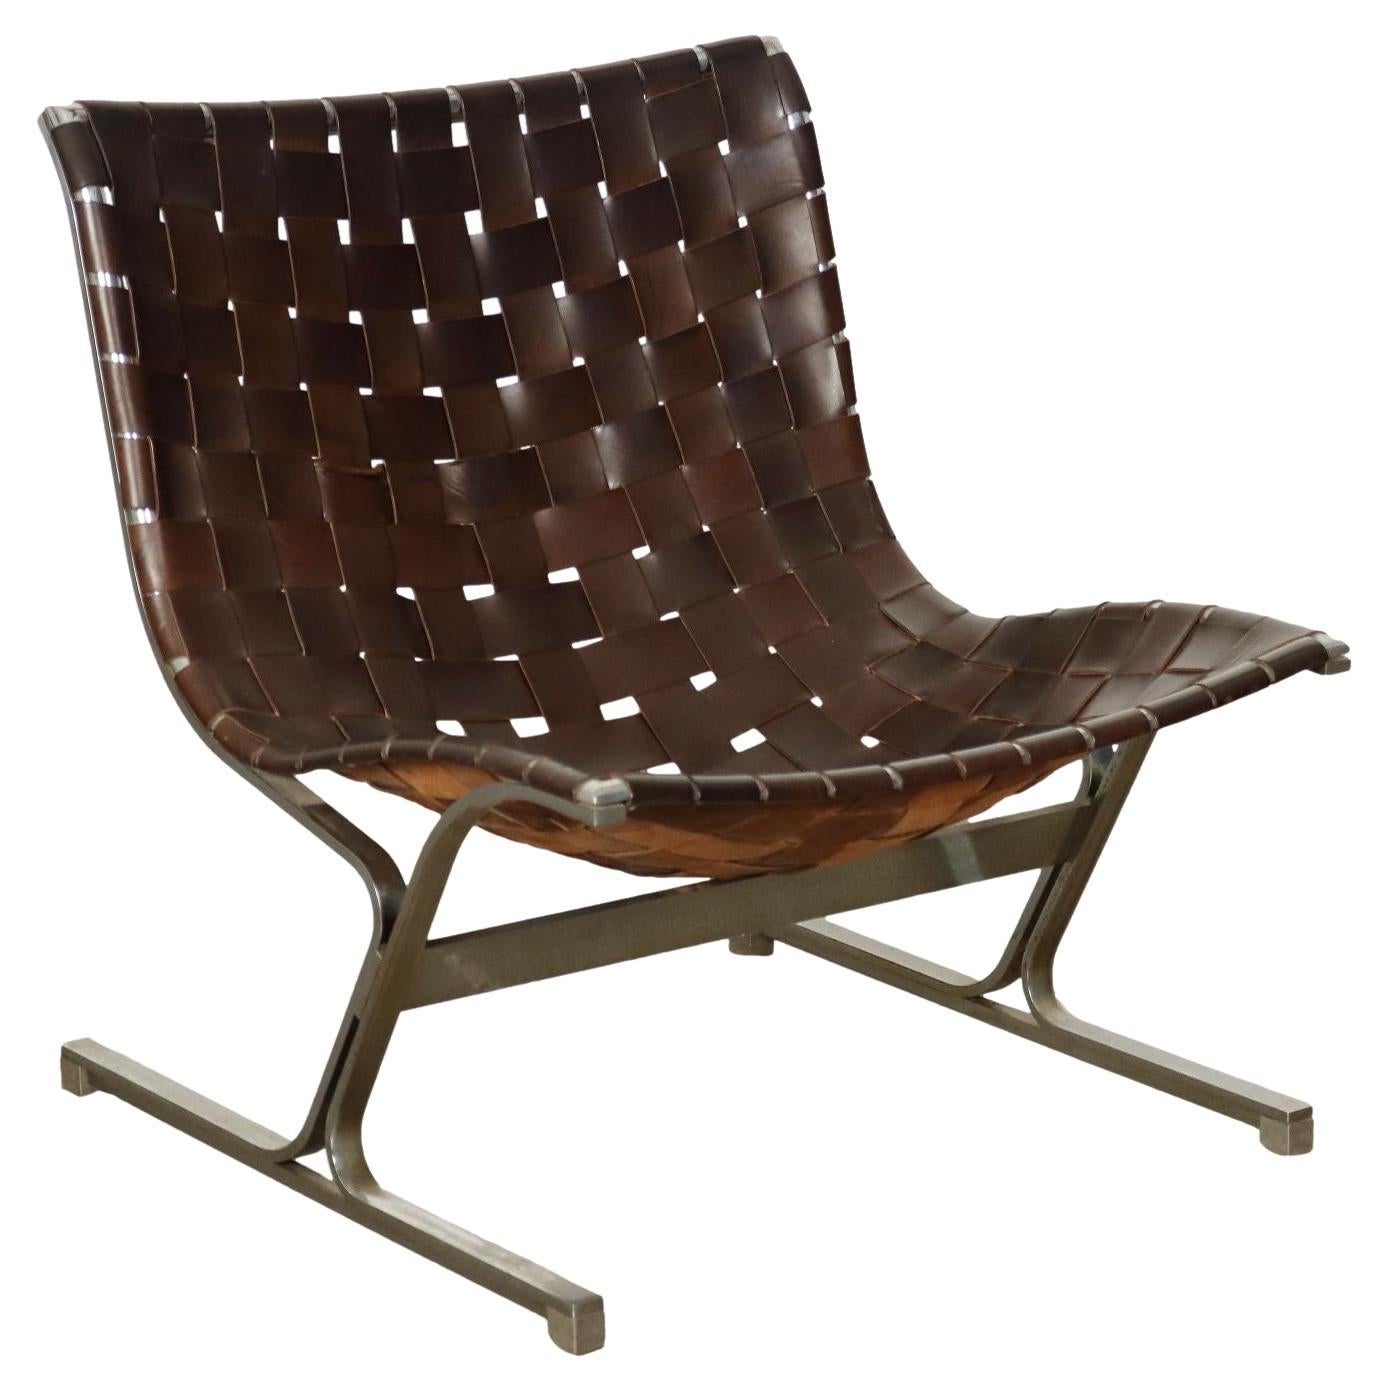 ICF Italia PLR 1 Armchair by R. Littel Leather, Italy, 1960s